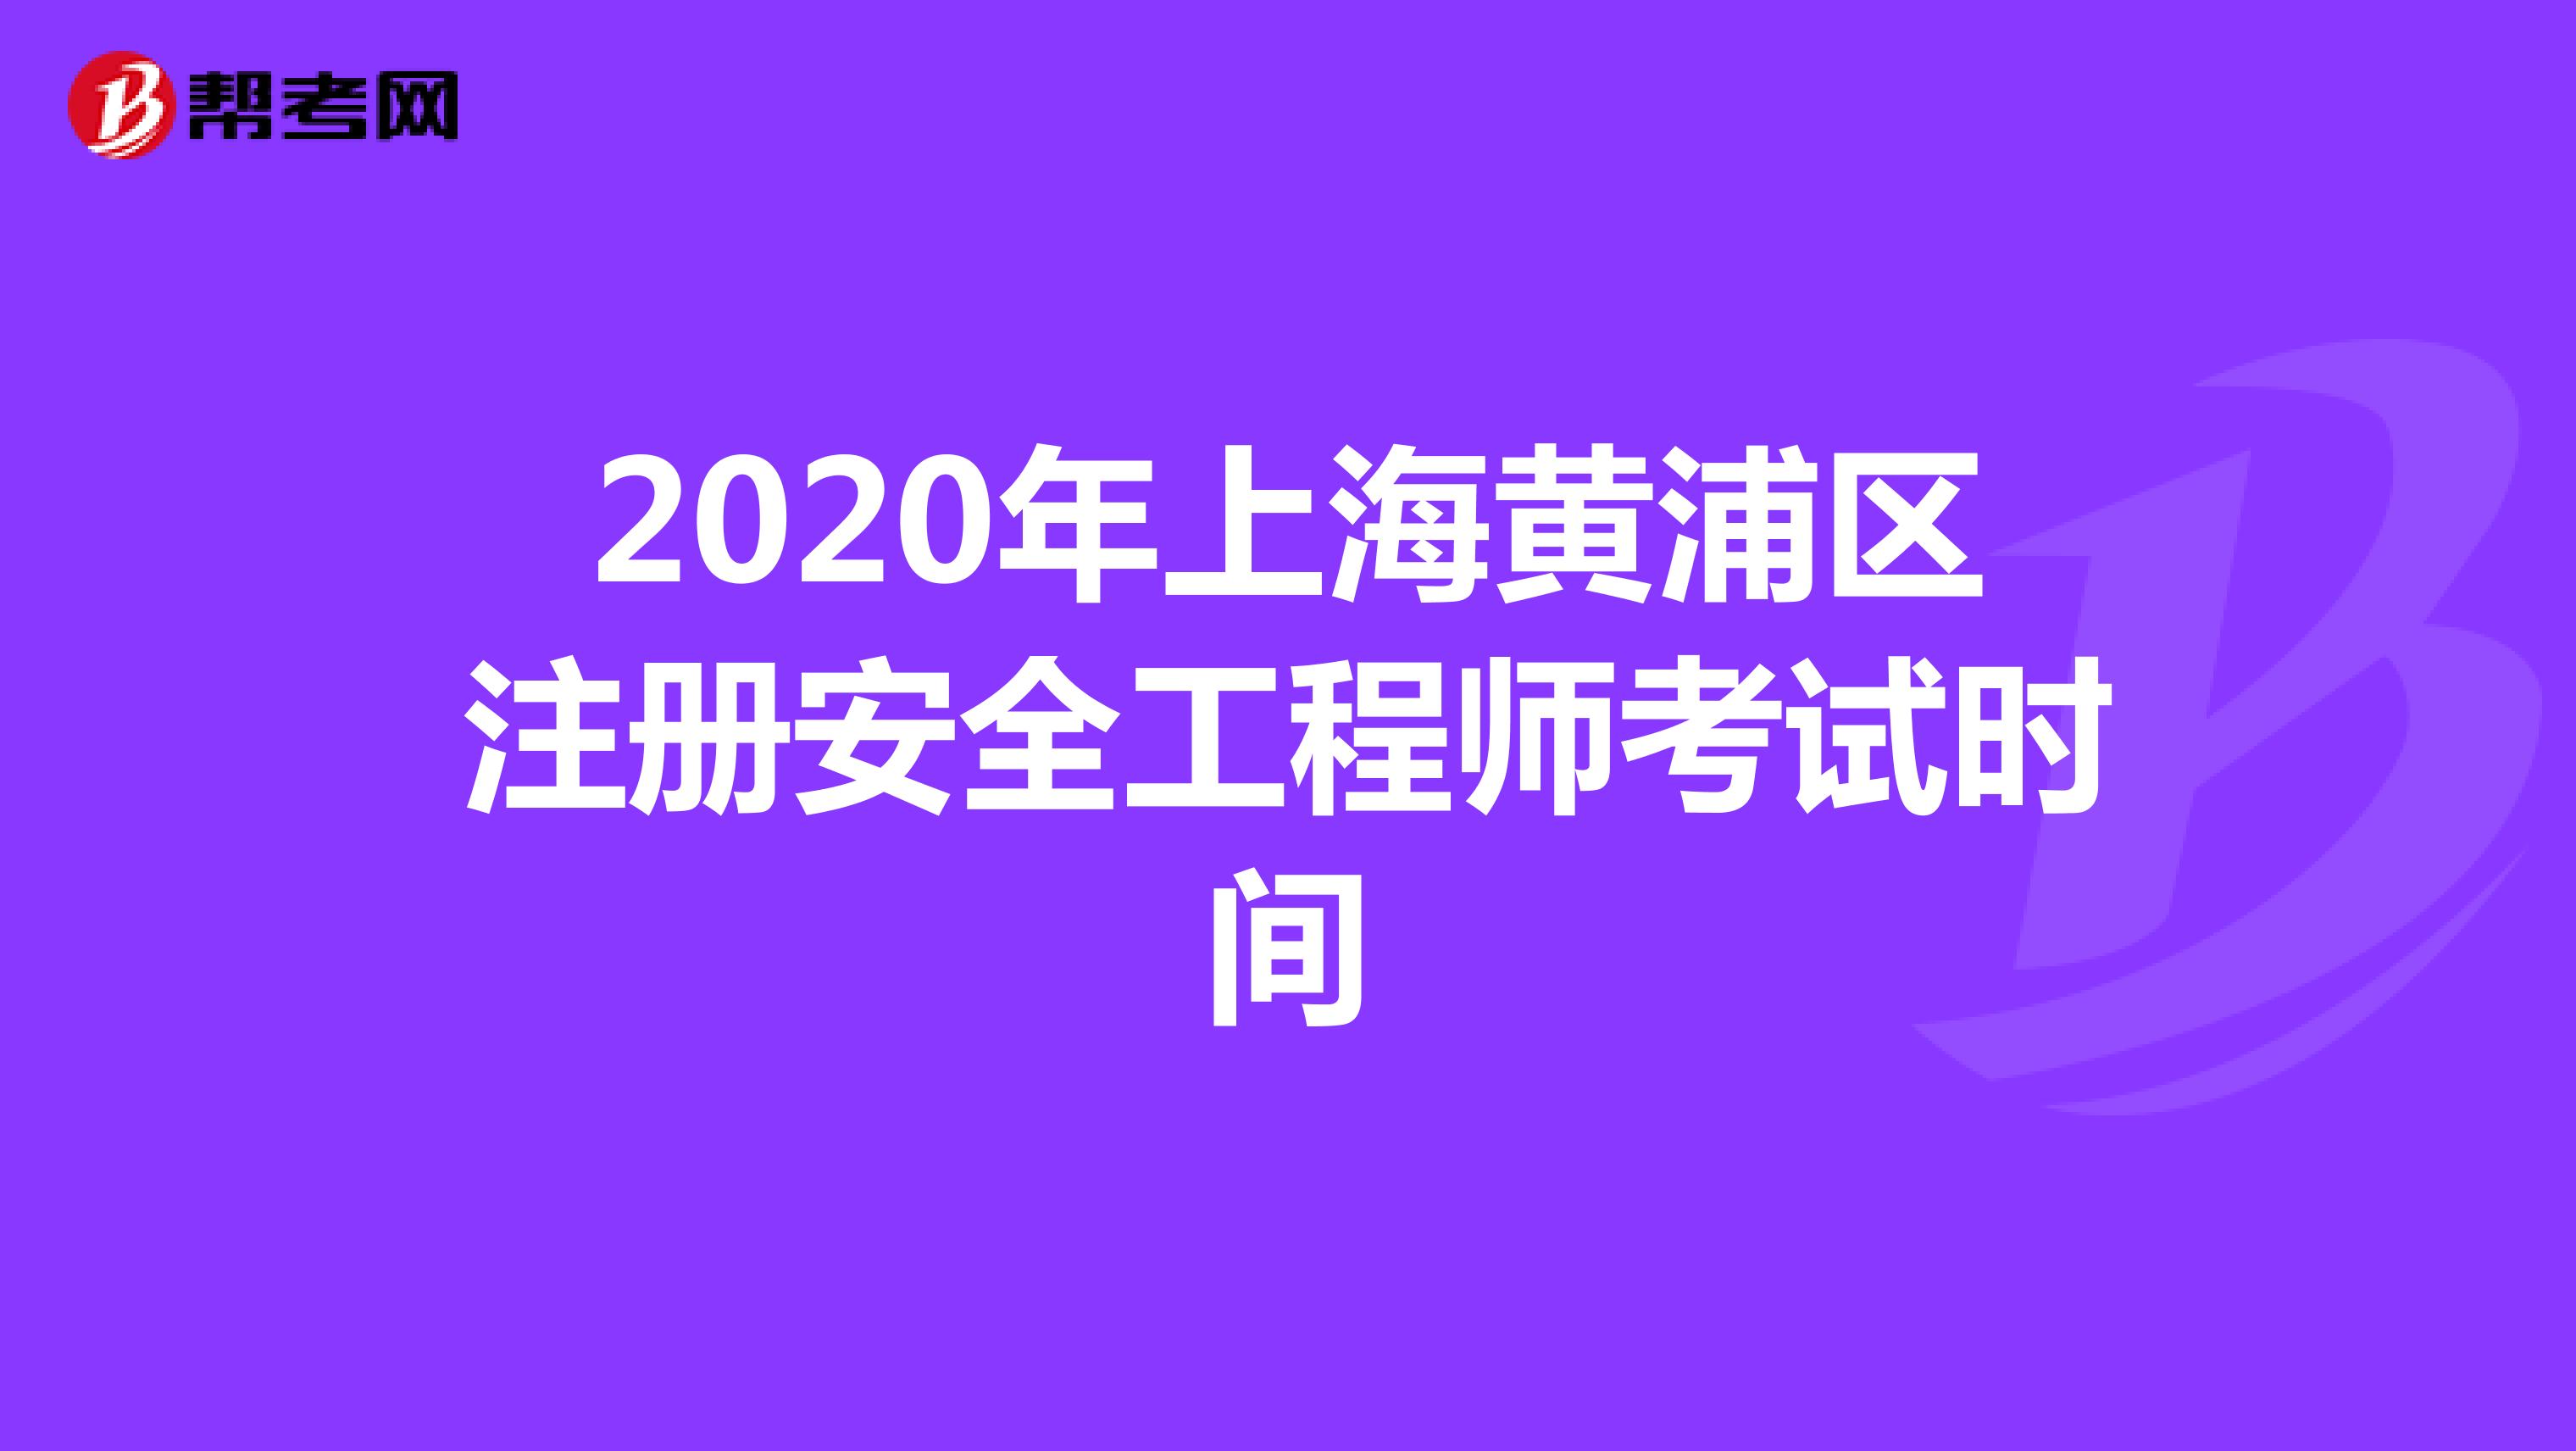 2020年上海黄浦区注册安全工程师考试时间